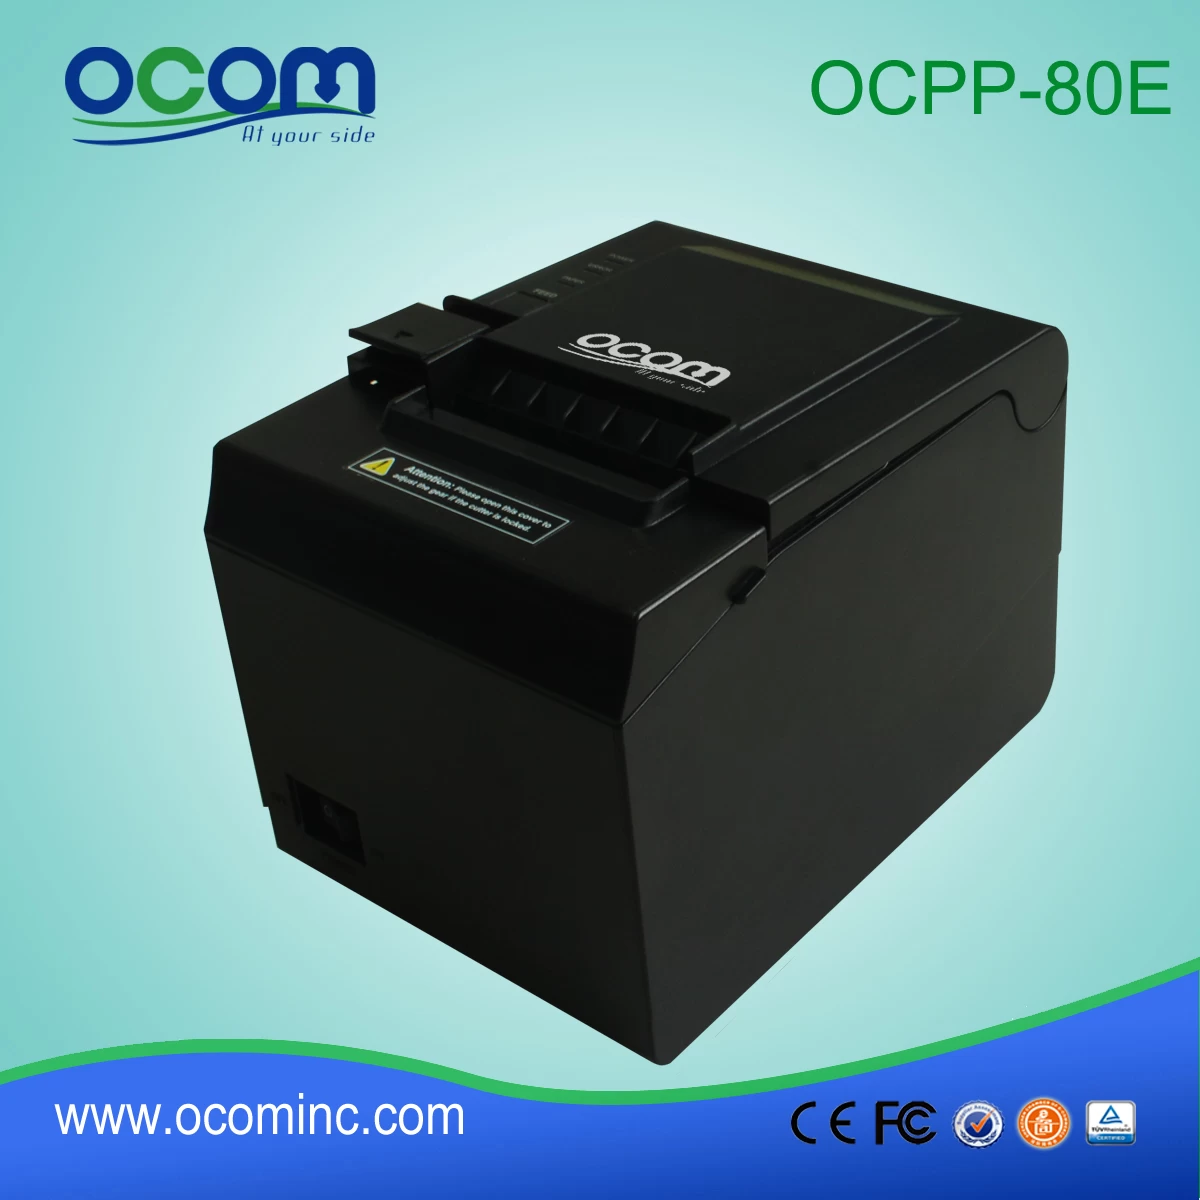 OCPP-80E---China made low price POS receipt printer